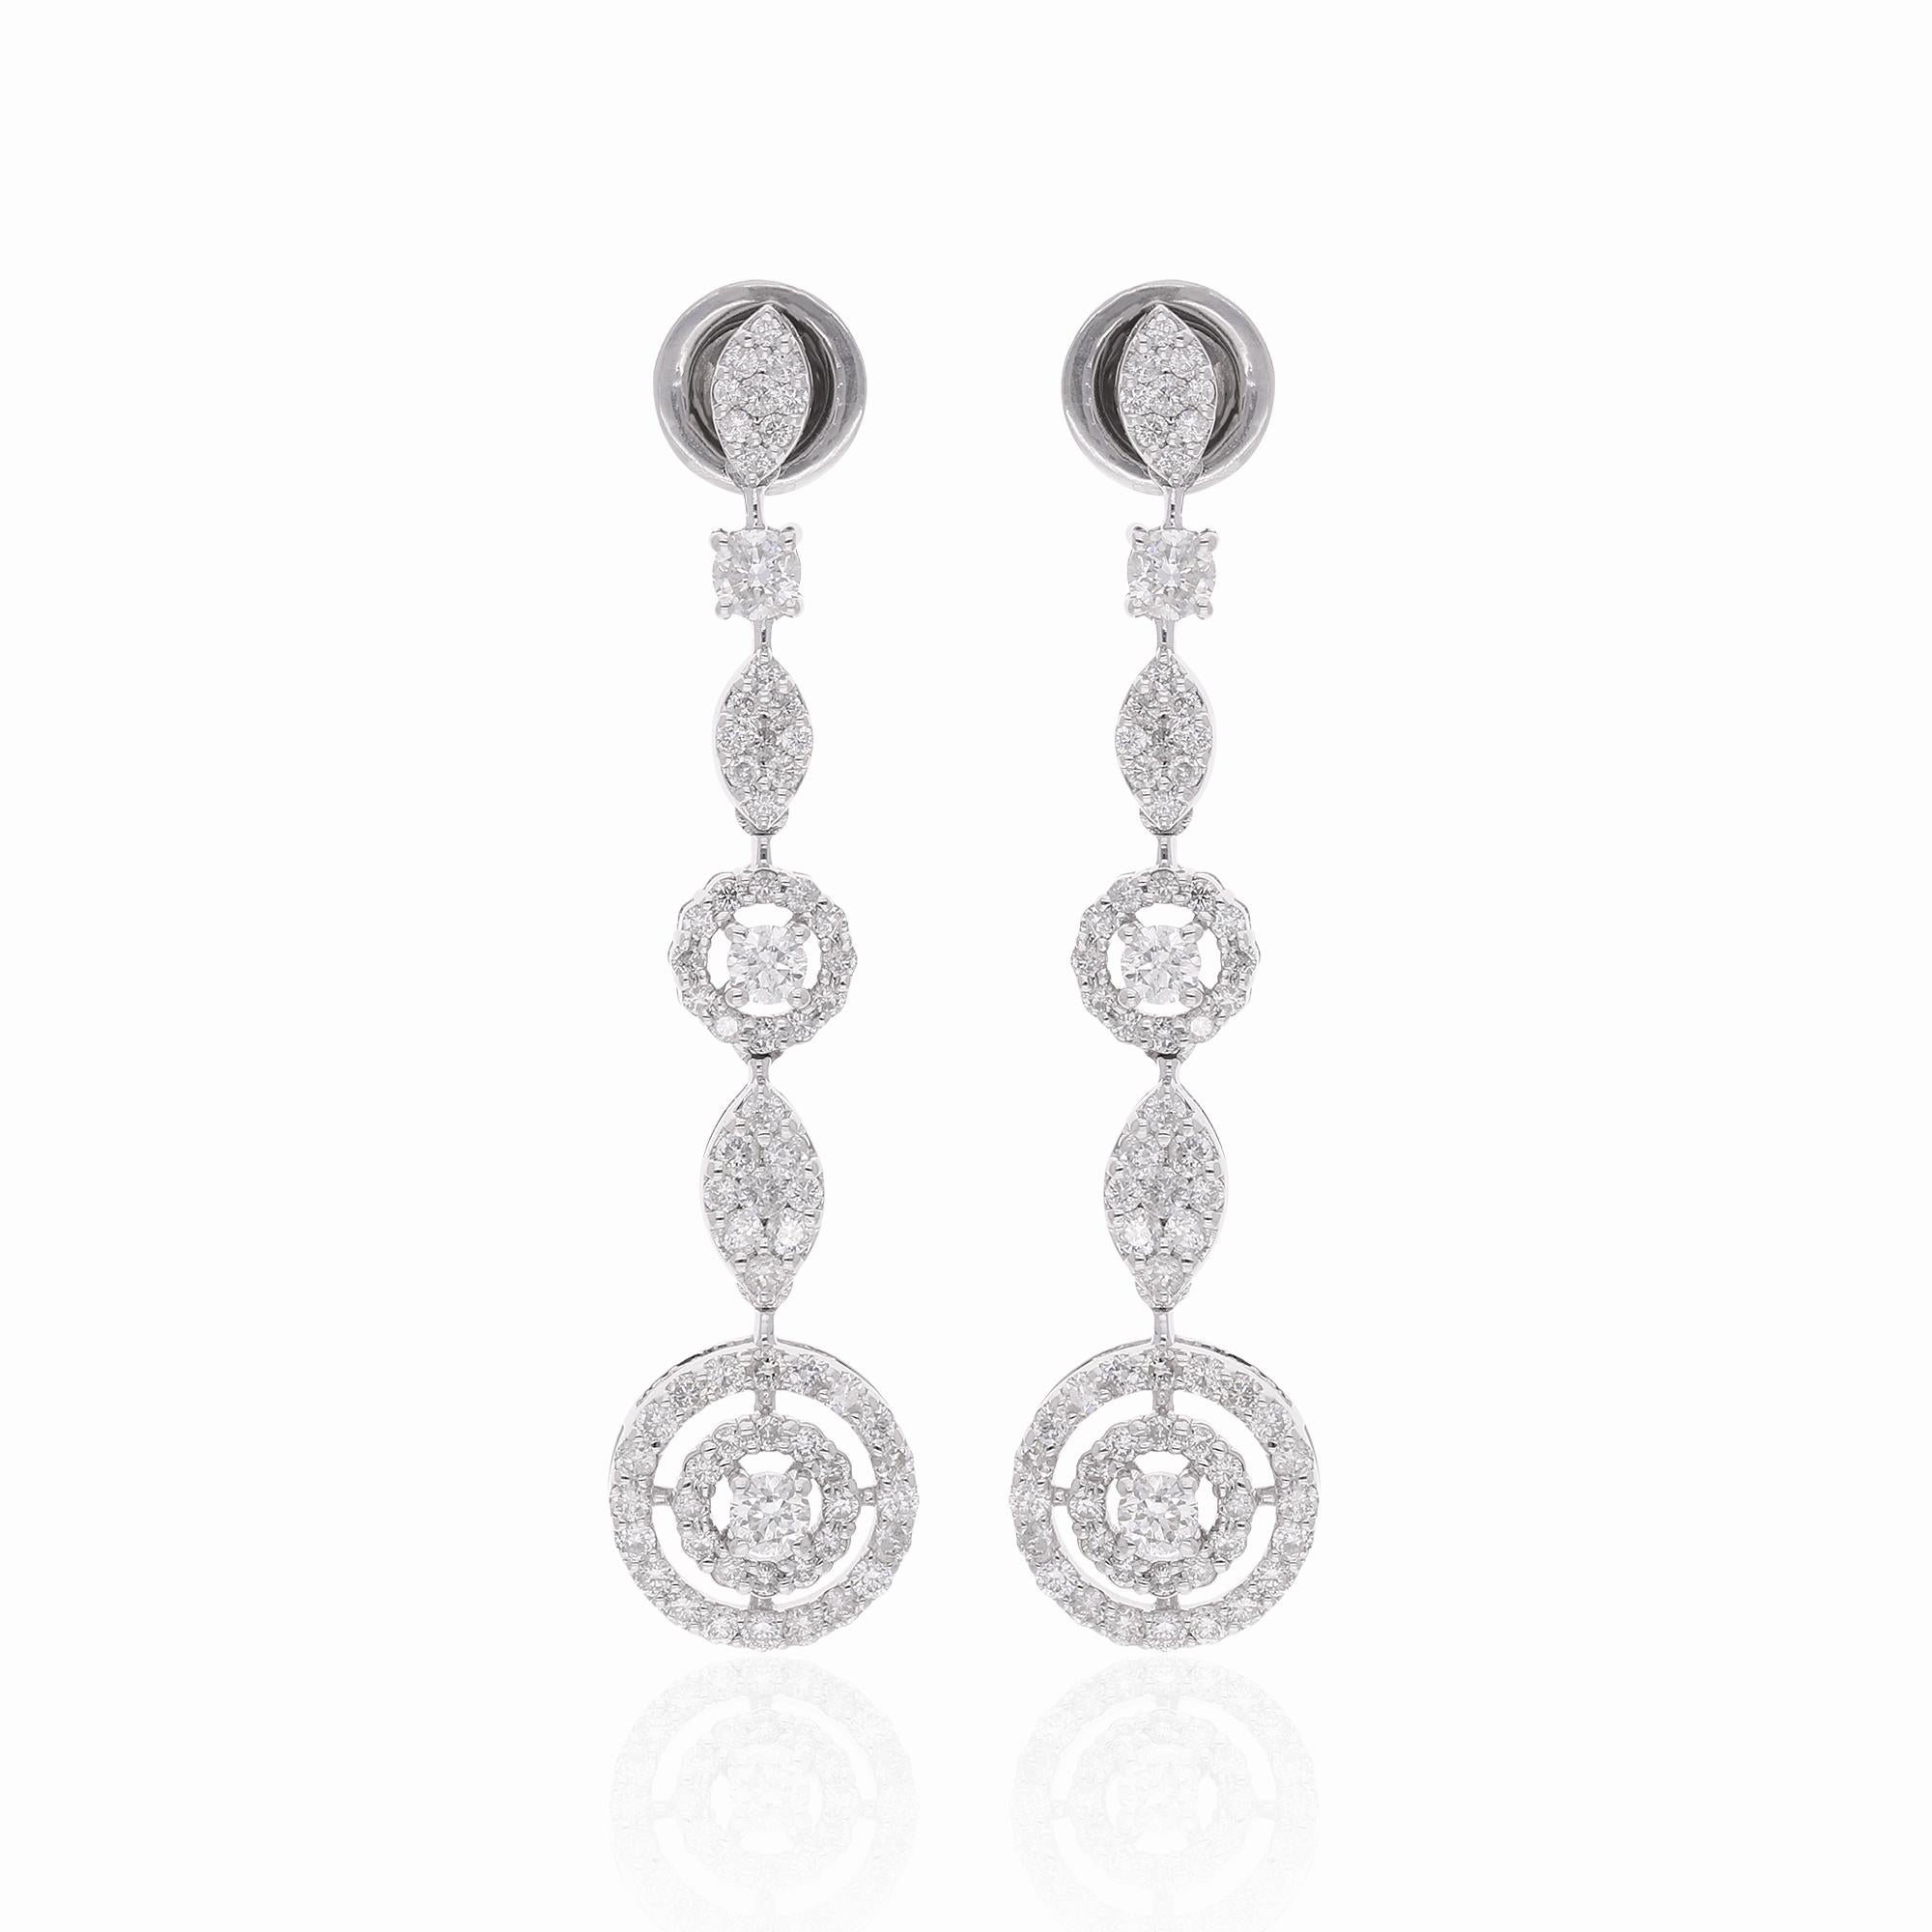 Diese atemberaubenden 1,81 Karat Pave Diamond Dangle Earrings verleihen Ihrem Ensemble einen Hauch von Eleganz. Sie sind ein glanzvolles Zeugnis handwerklicher Kunstfertigkeit und zeitloser Schönheit. Diese mit viel Liebe zum Detail handgefertigten